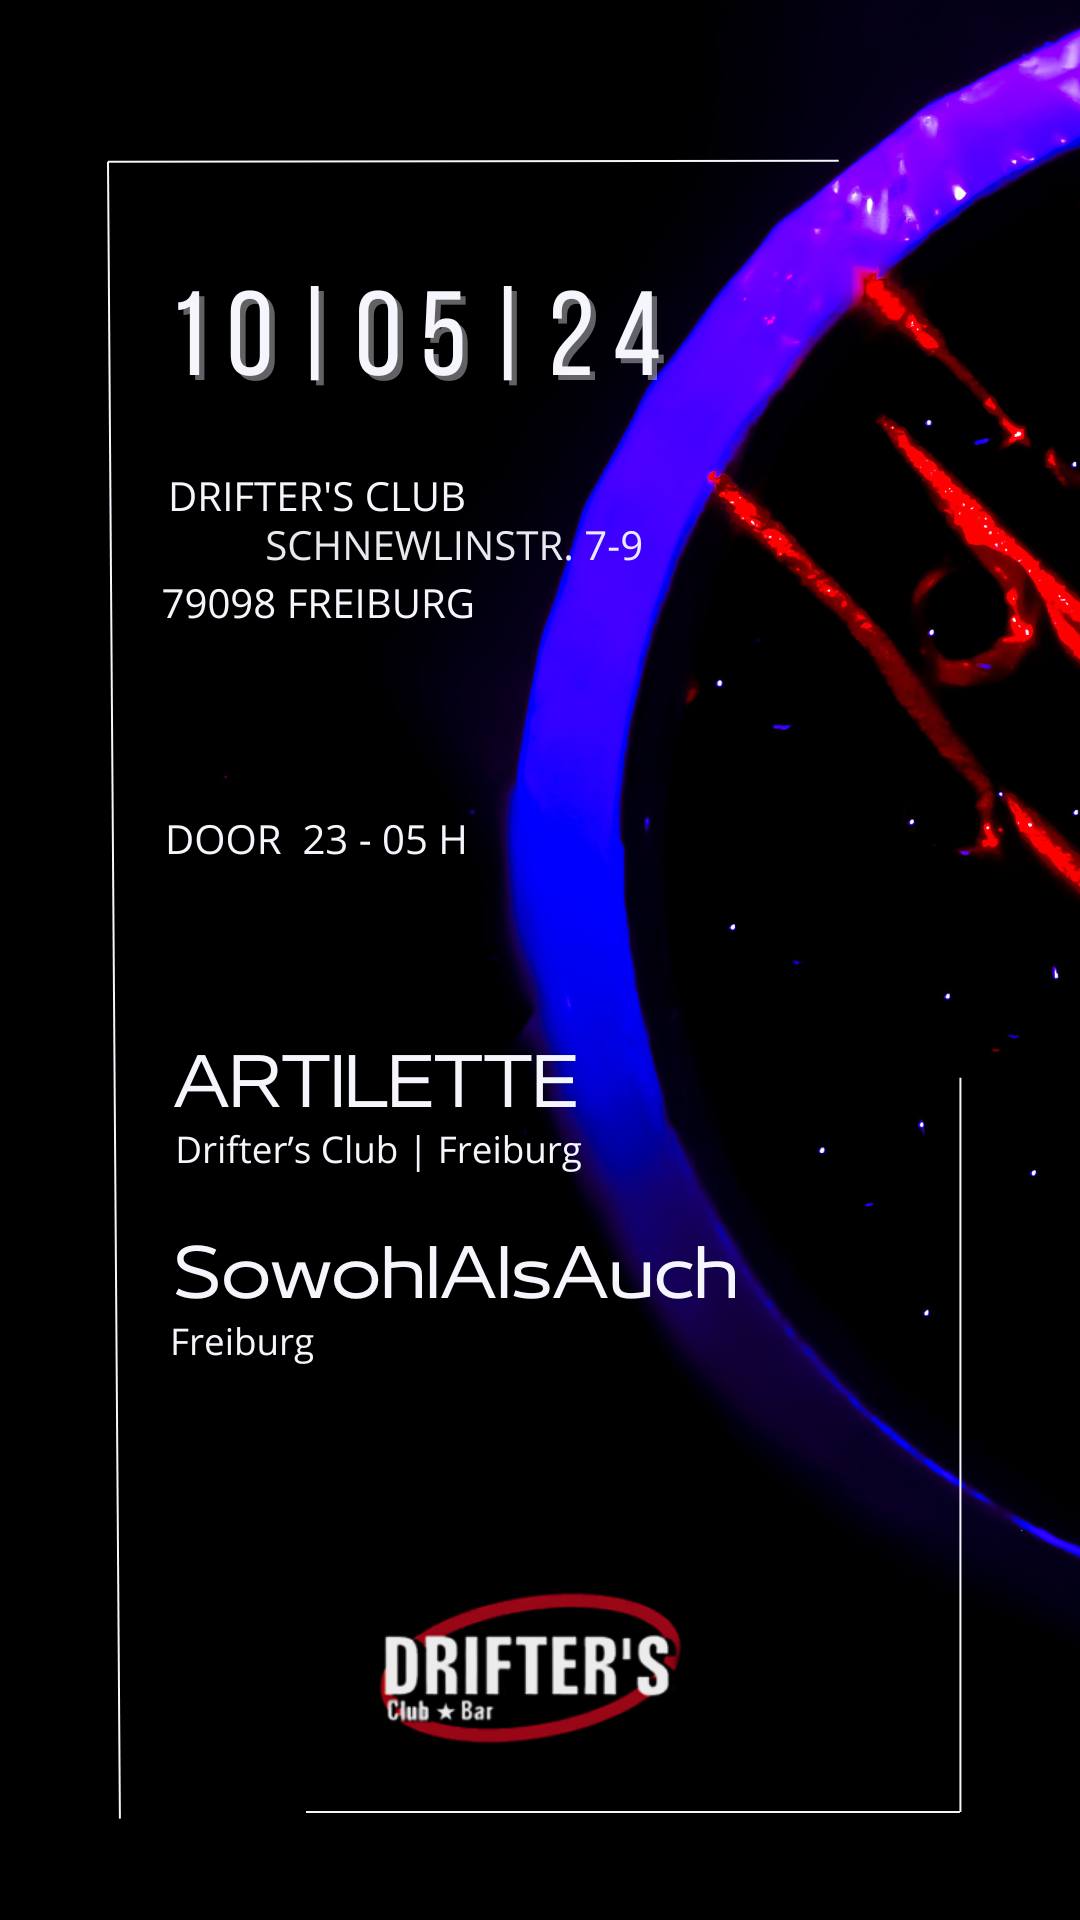 szene-Radar - Artilette + SowohlAlsAuch, Drifters Club  in Freiburg im Breisgau